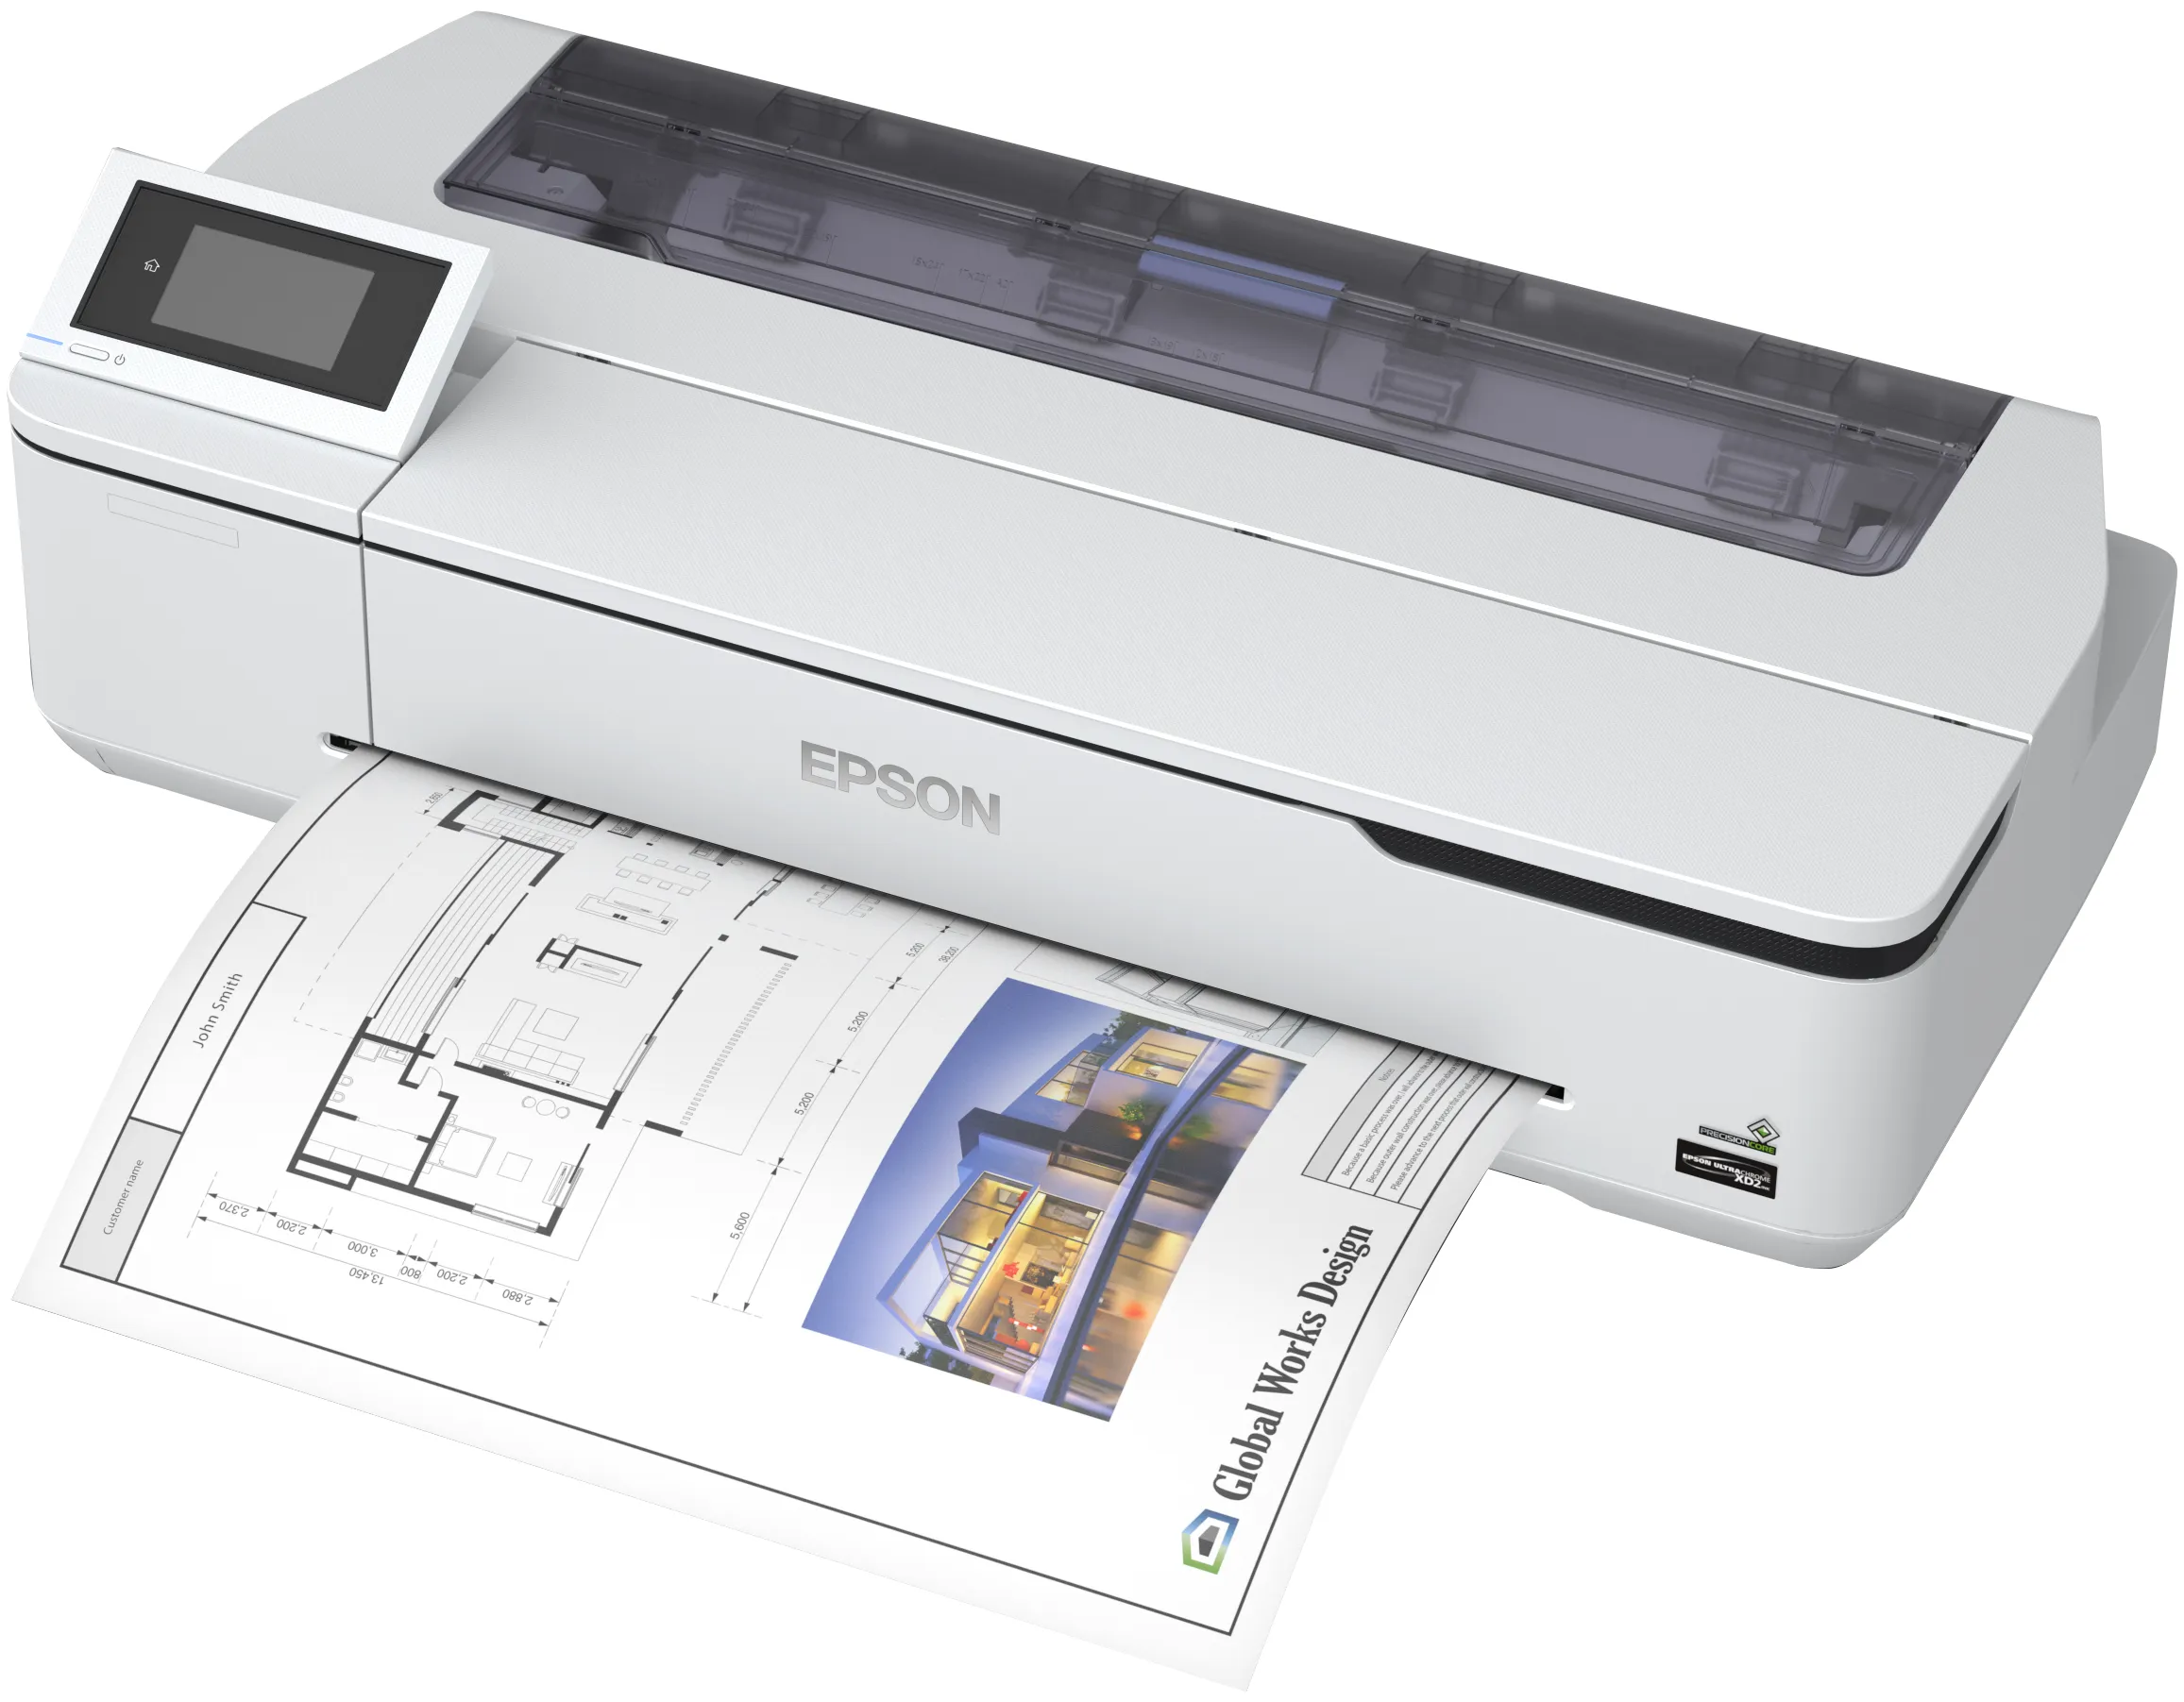 Vente EPSON SureColor SC-T2100 WiFi Color Printer LFP Epson au meilleur prix - visuel 6